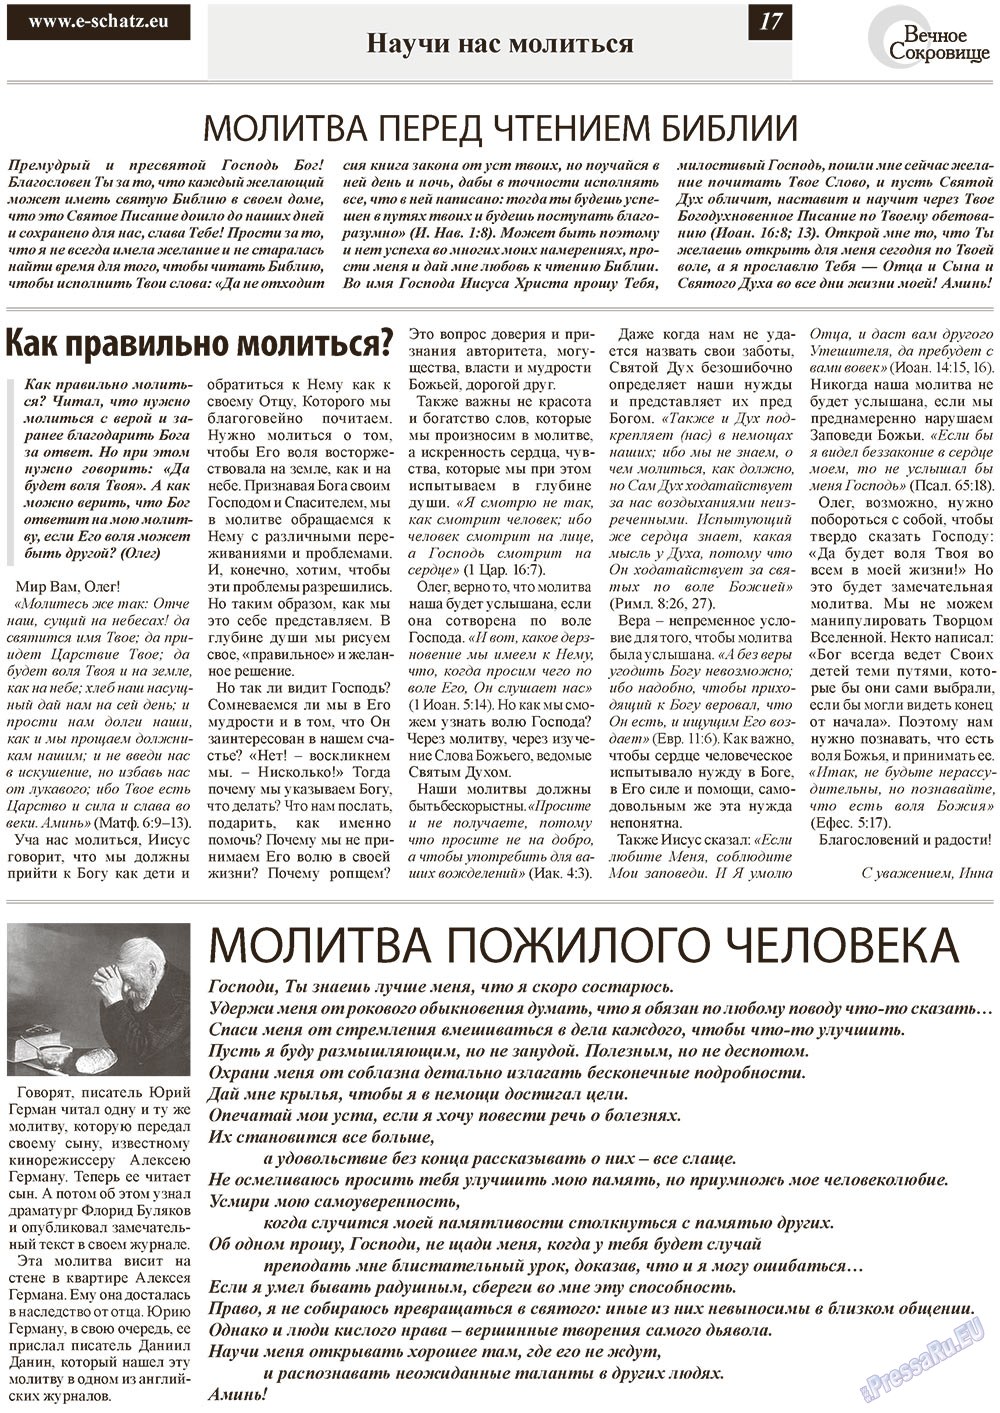 Вечное сокровище (газета). 2012 год, номер 6, стр. 17